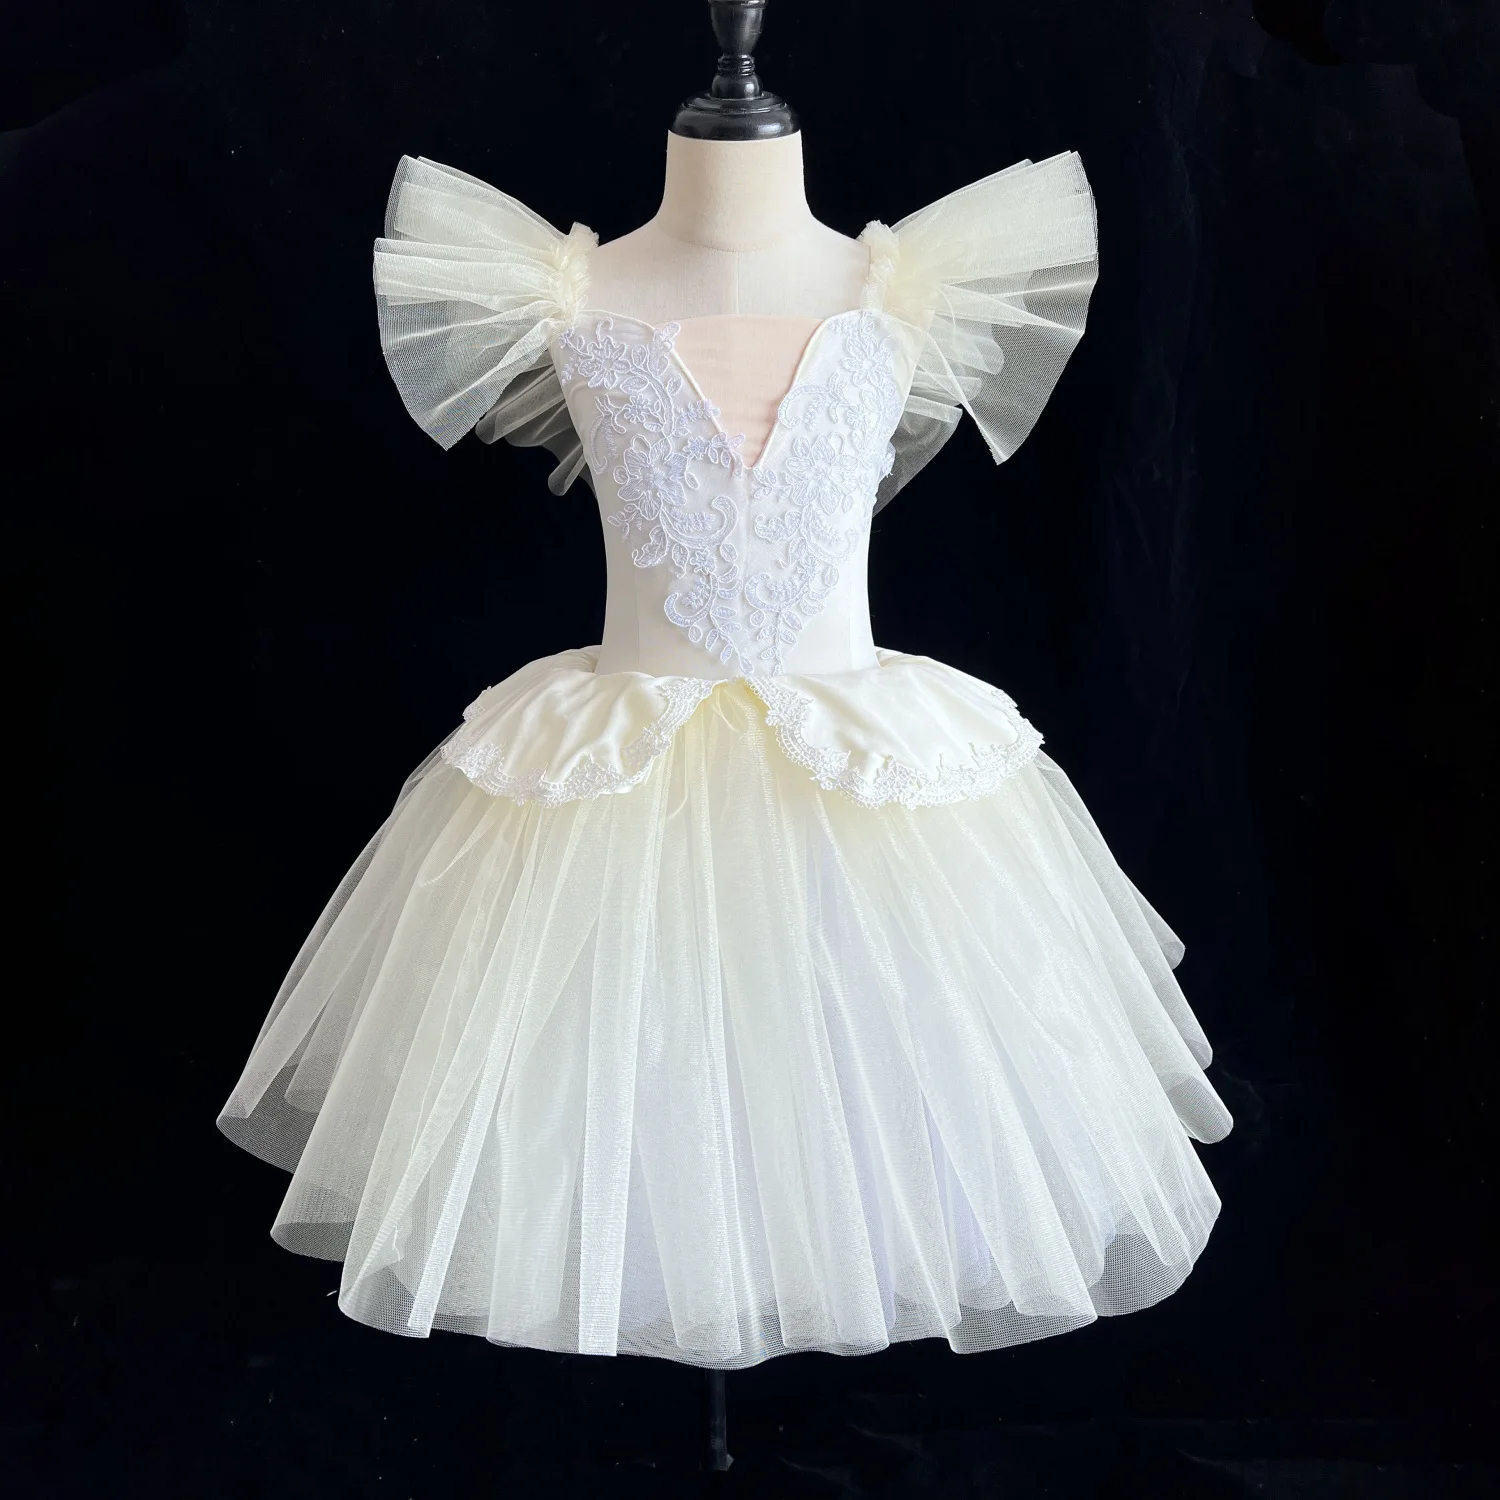 

Kids Ballerina Ballet Tutu Dance Long Dress Children Professional Swan Lake Dance Costumes Skirt Girls Long Ballet Outfits White